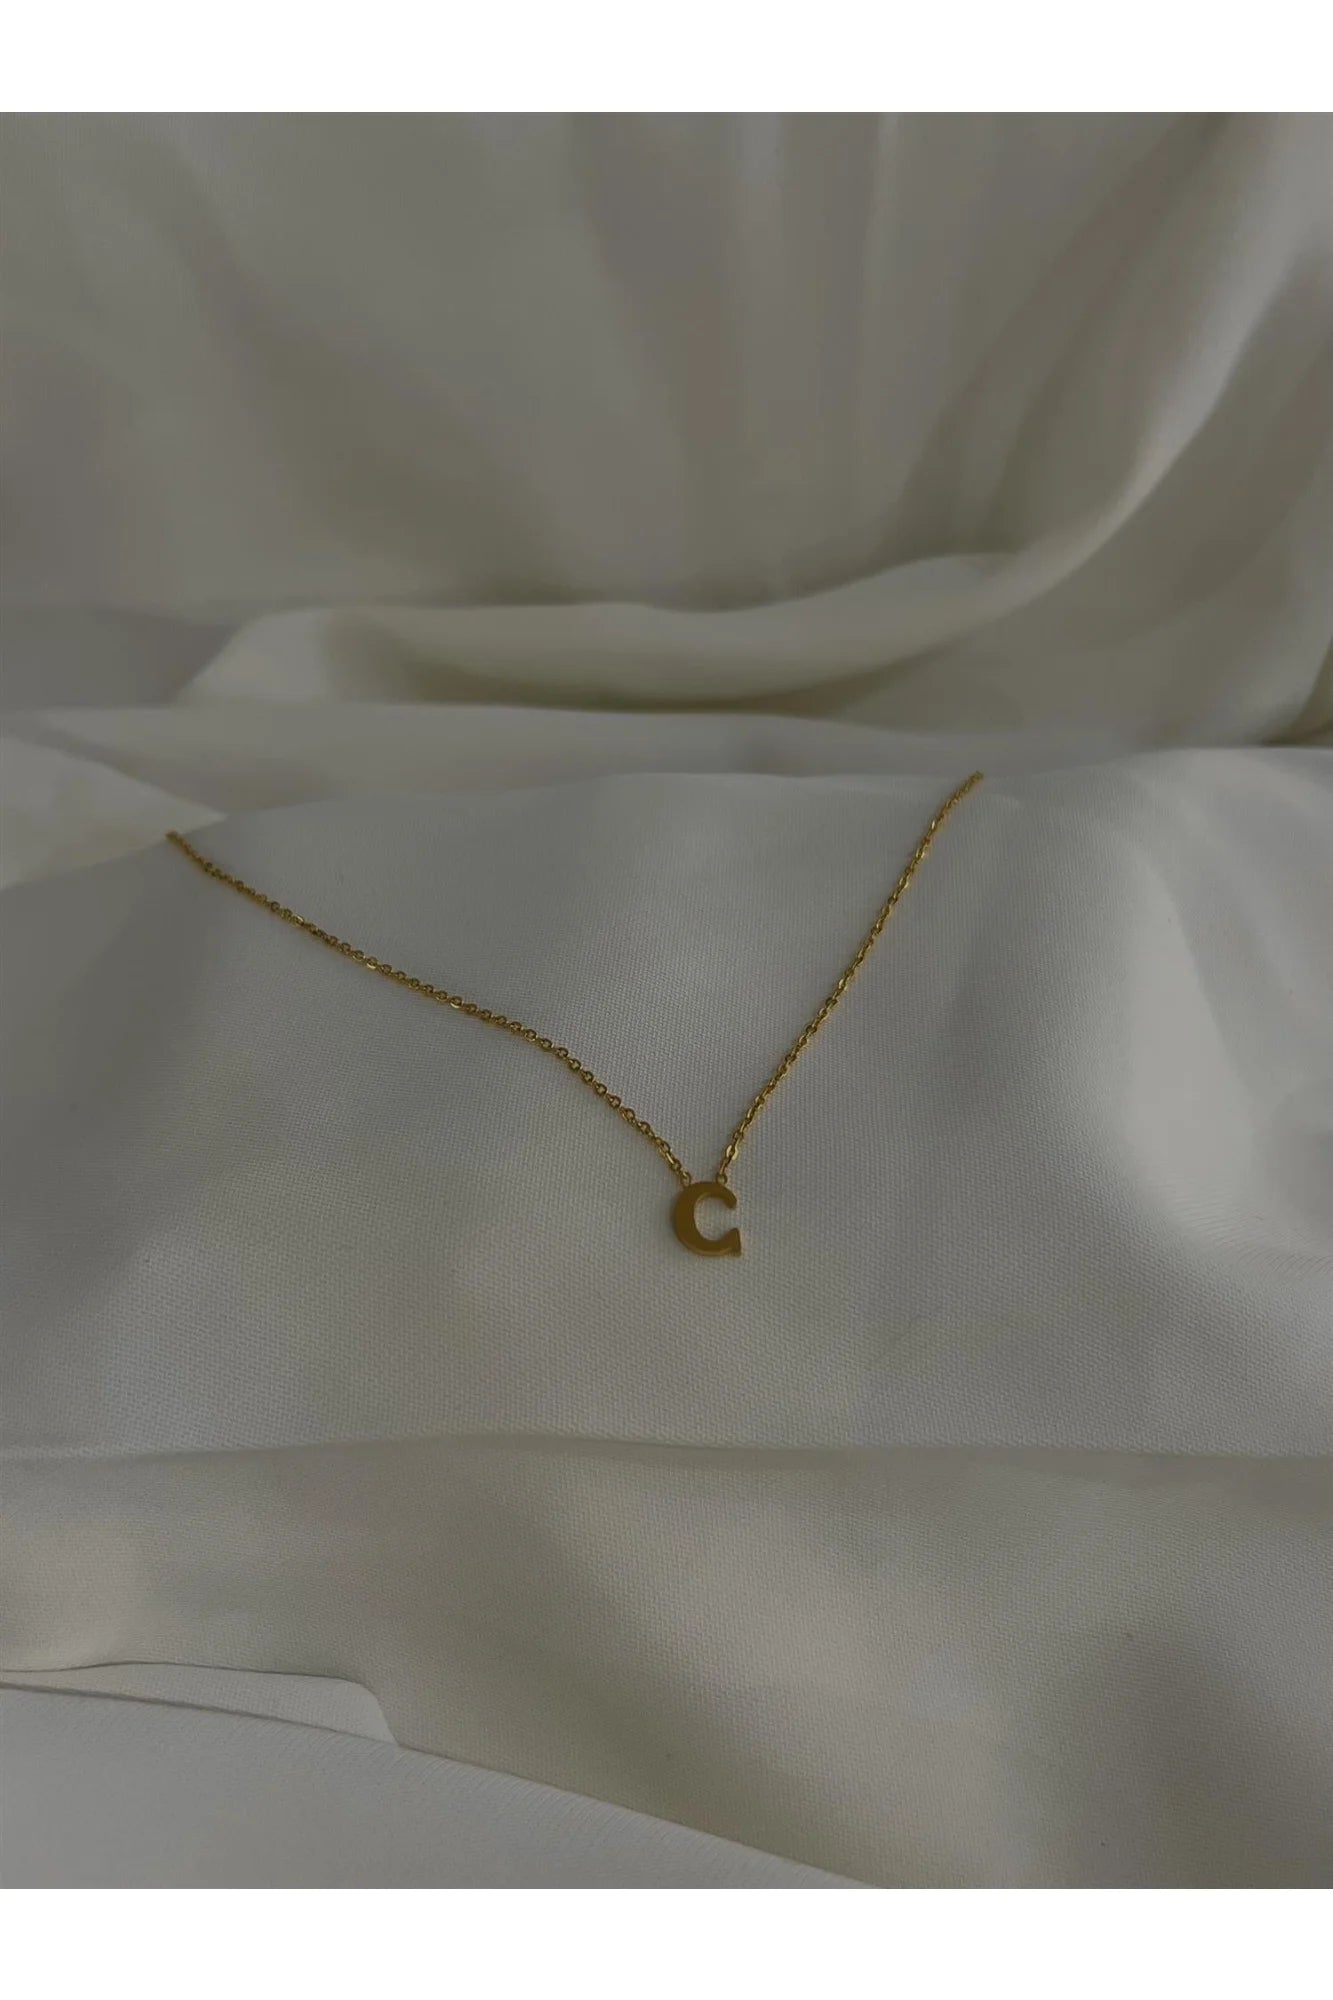 C necklace - Tilbehør